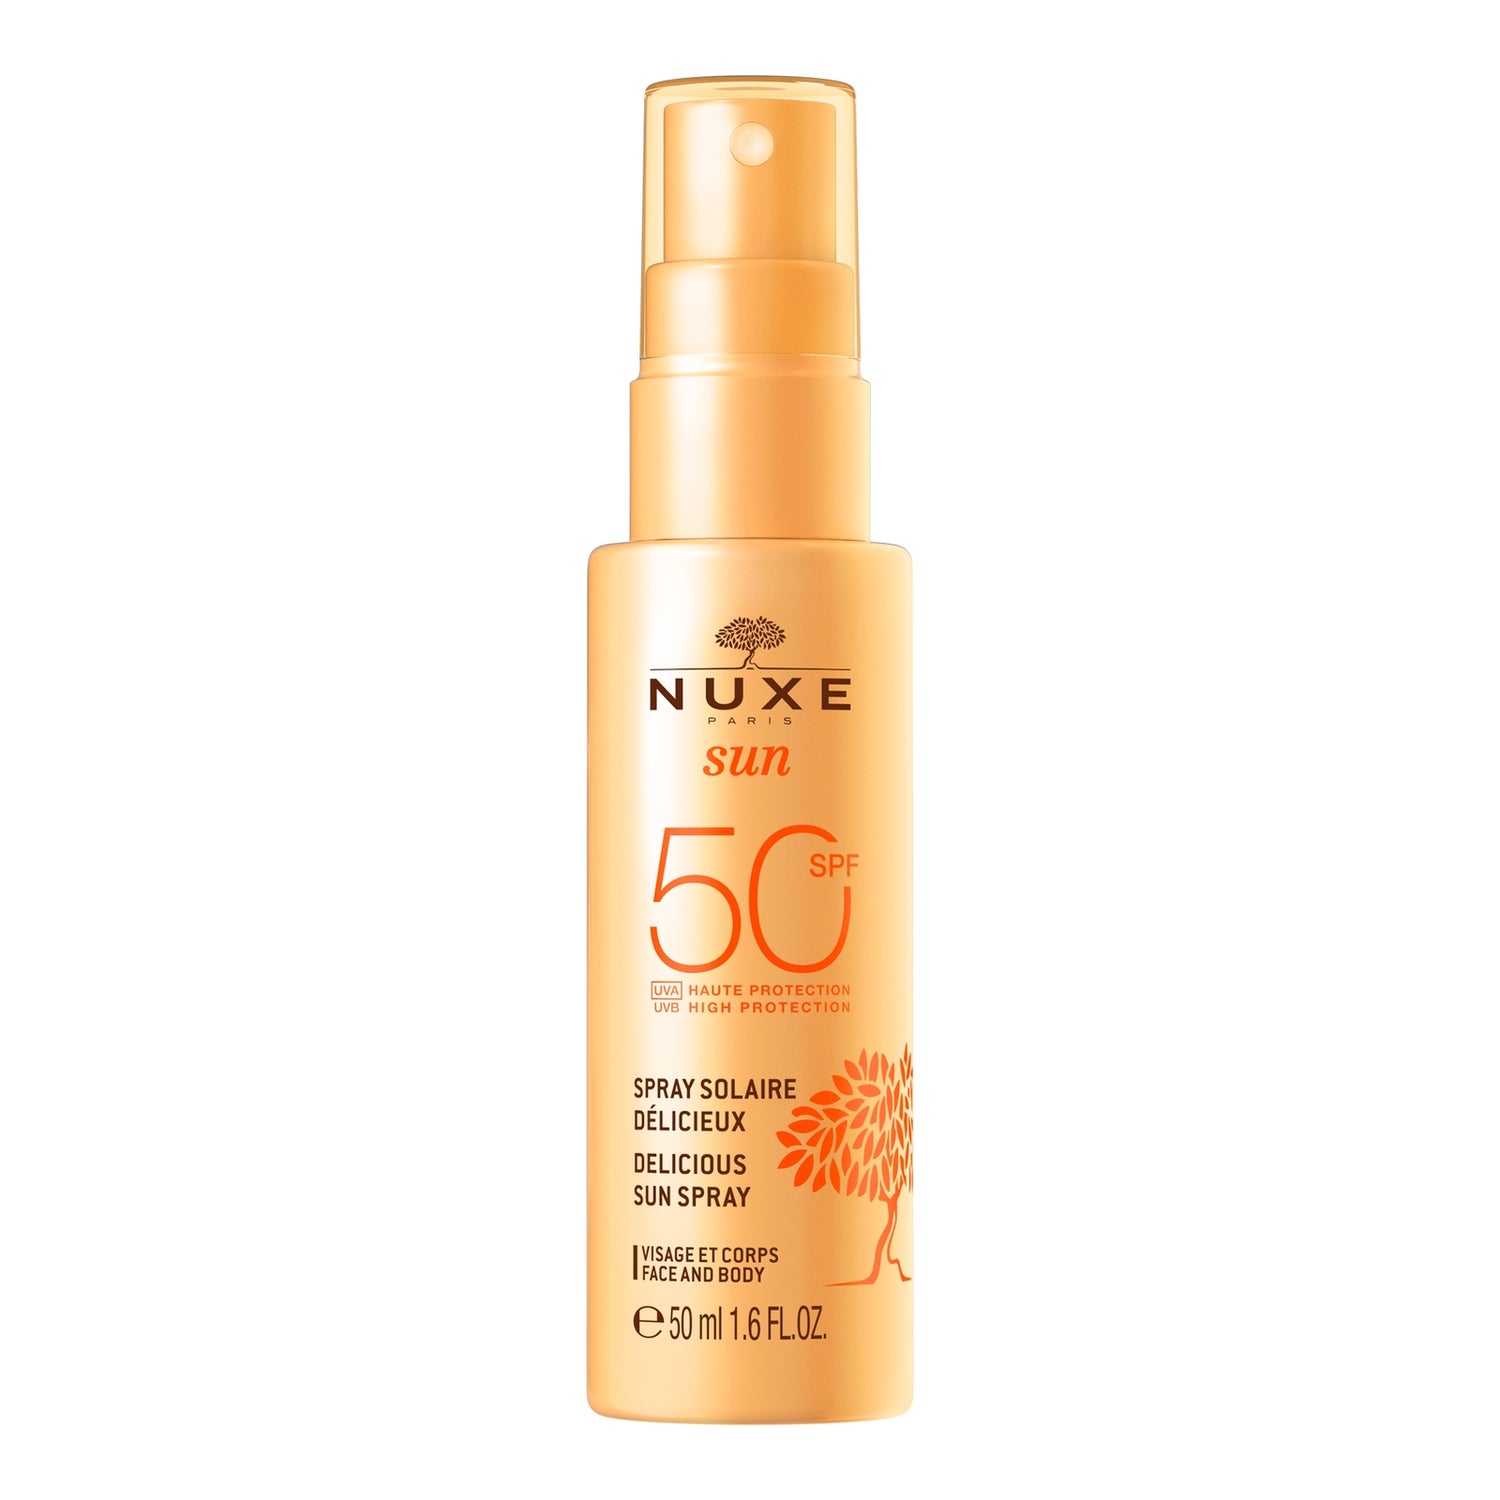 Delicious Sun Spray High Protection SPF50 face and body, Nuxe Sun 50 ml